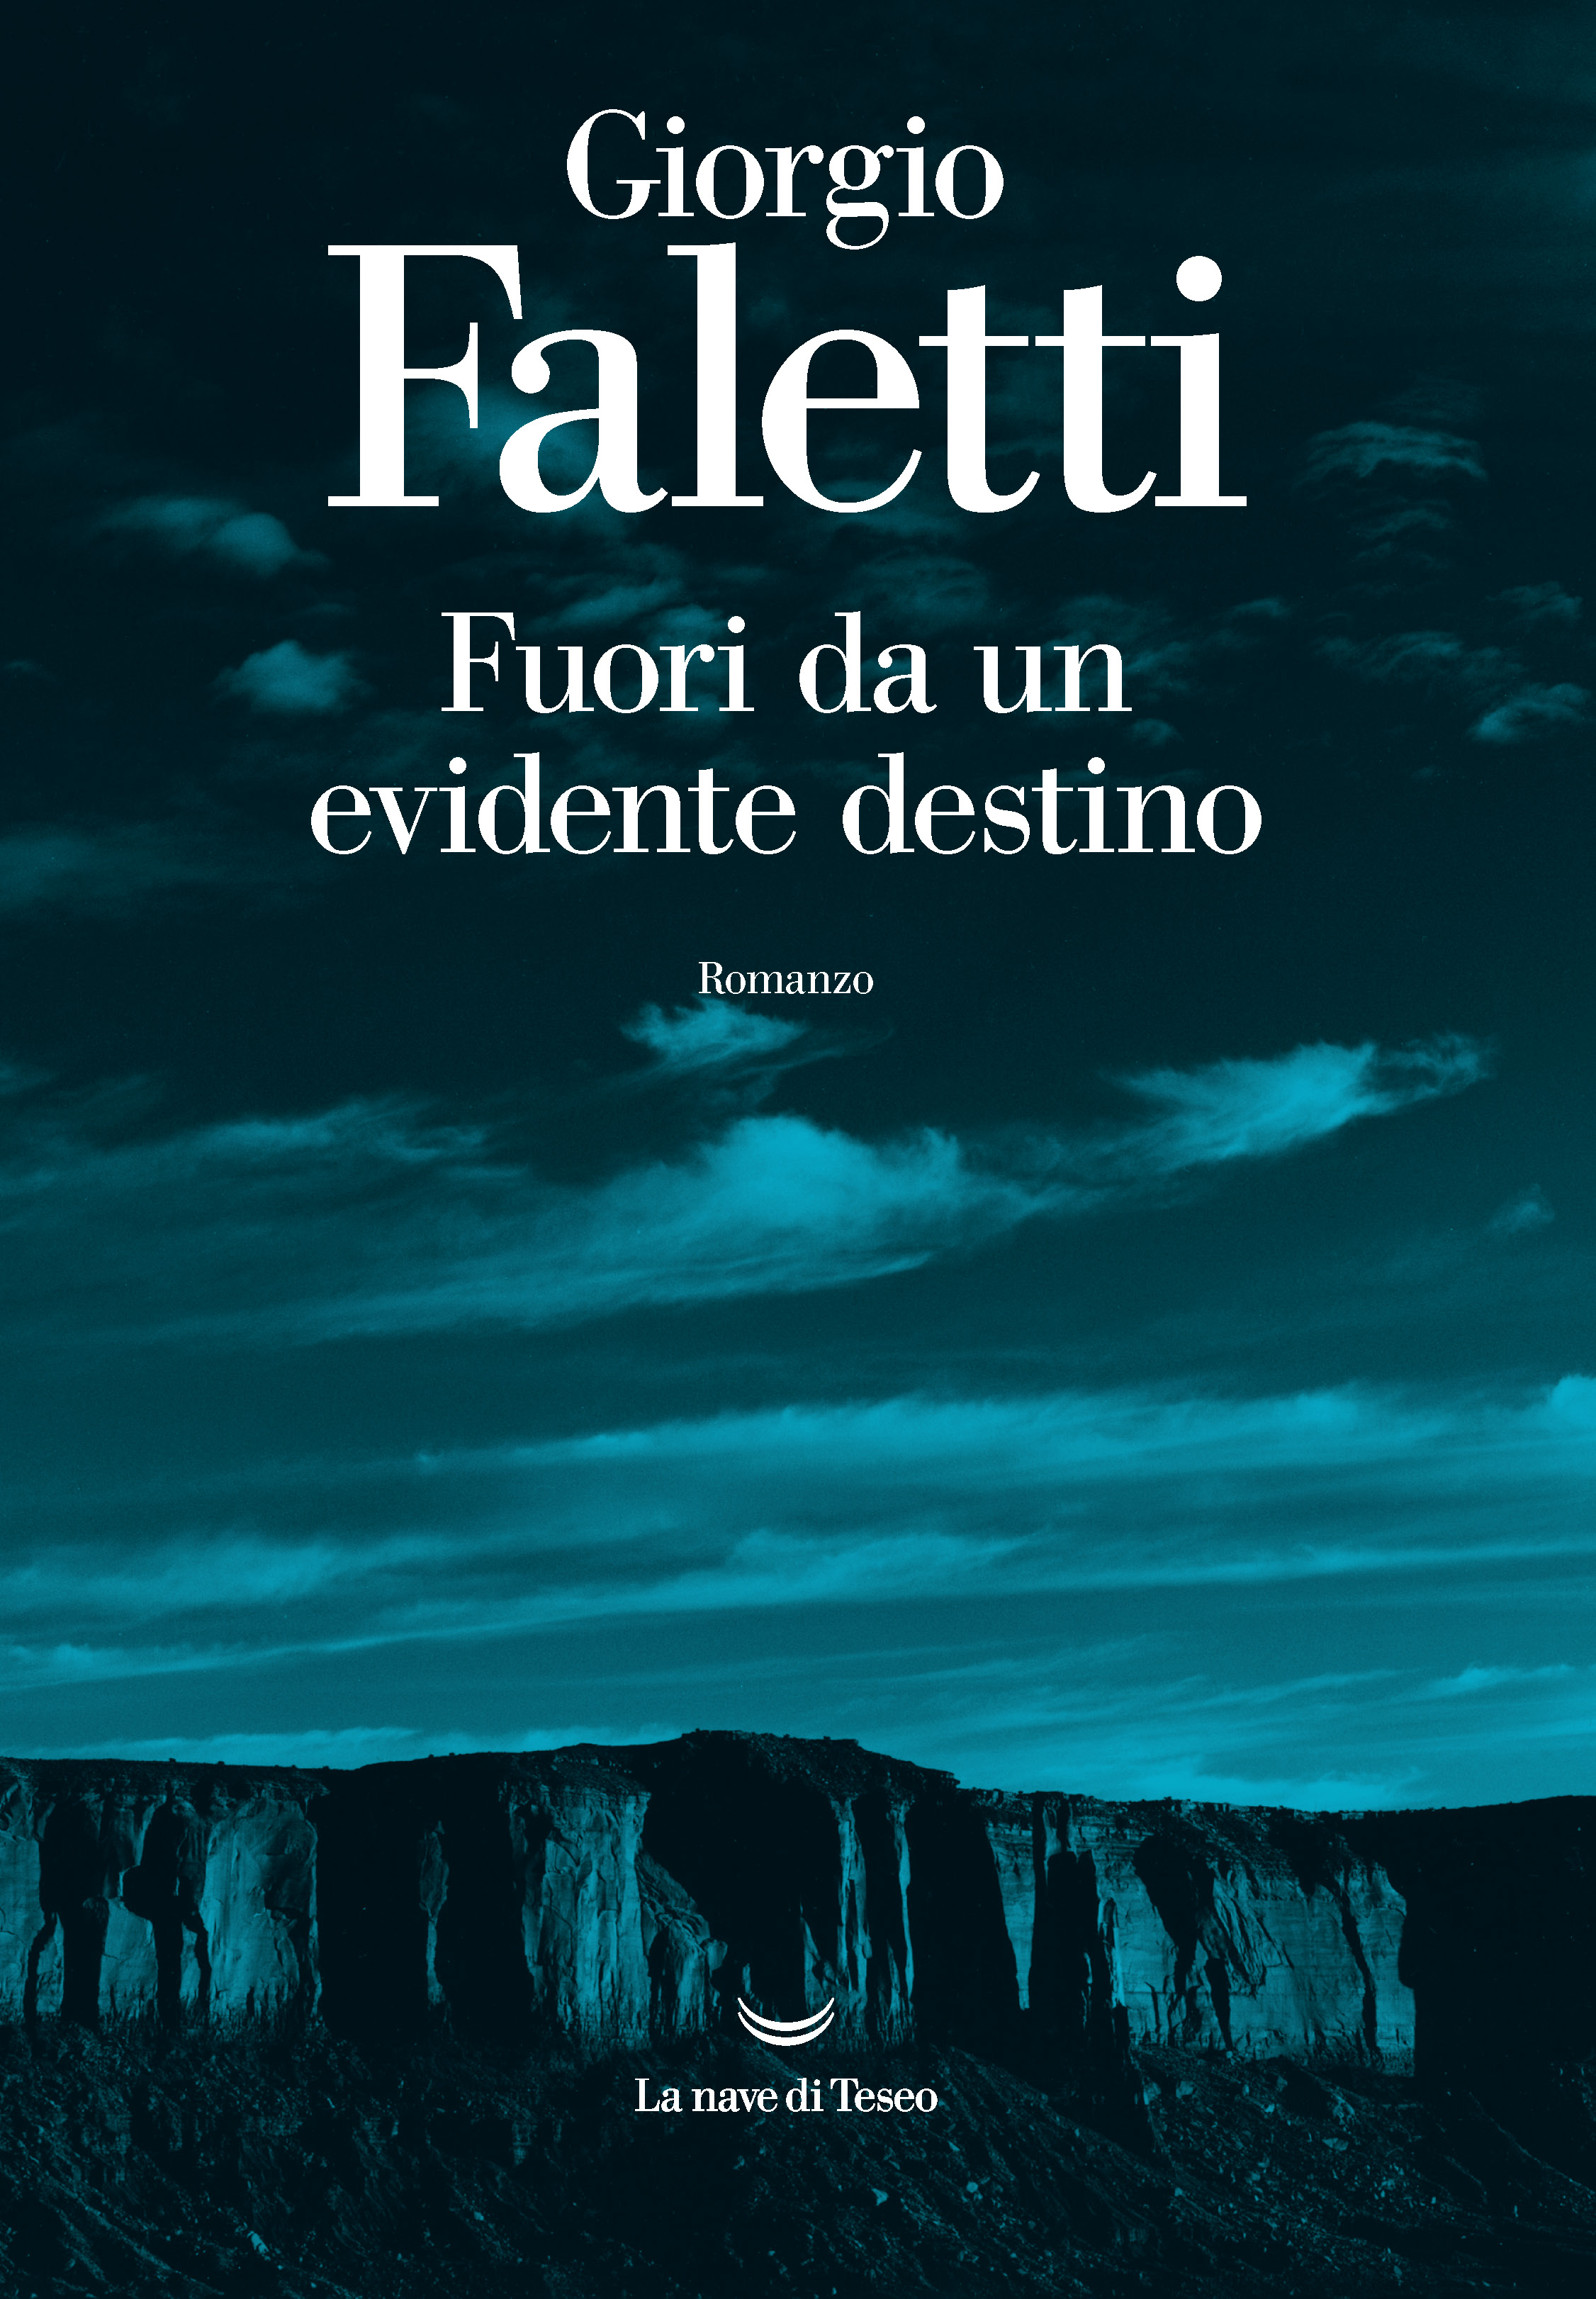 Copertina del romanzo di Giorgio Faletti Furoi da un evidente destino, Pubblicato da La Nave di Teseo